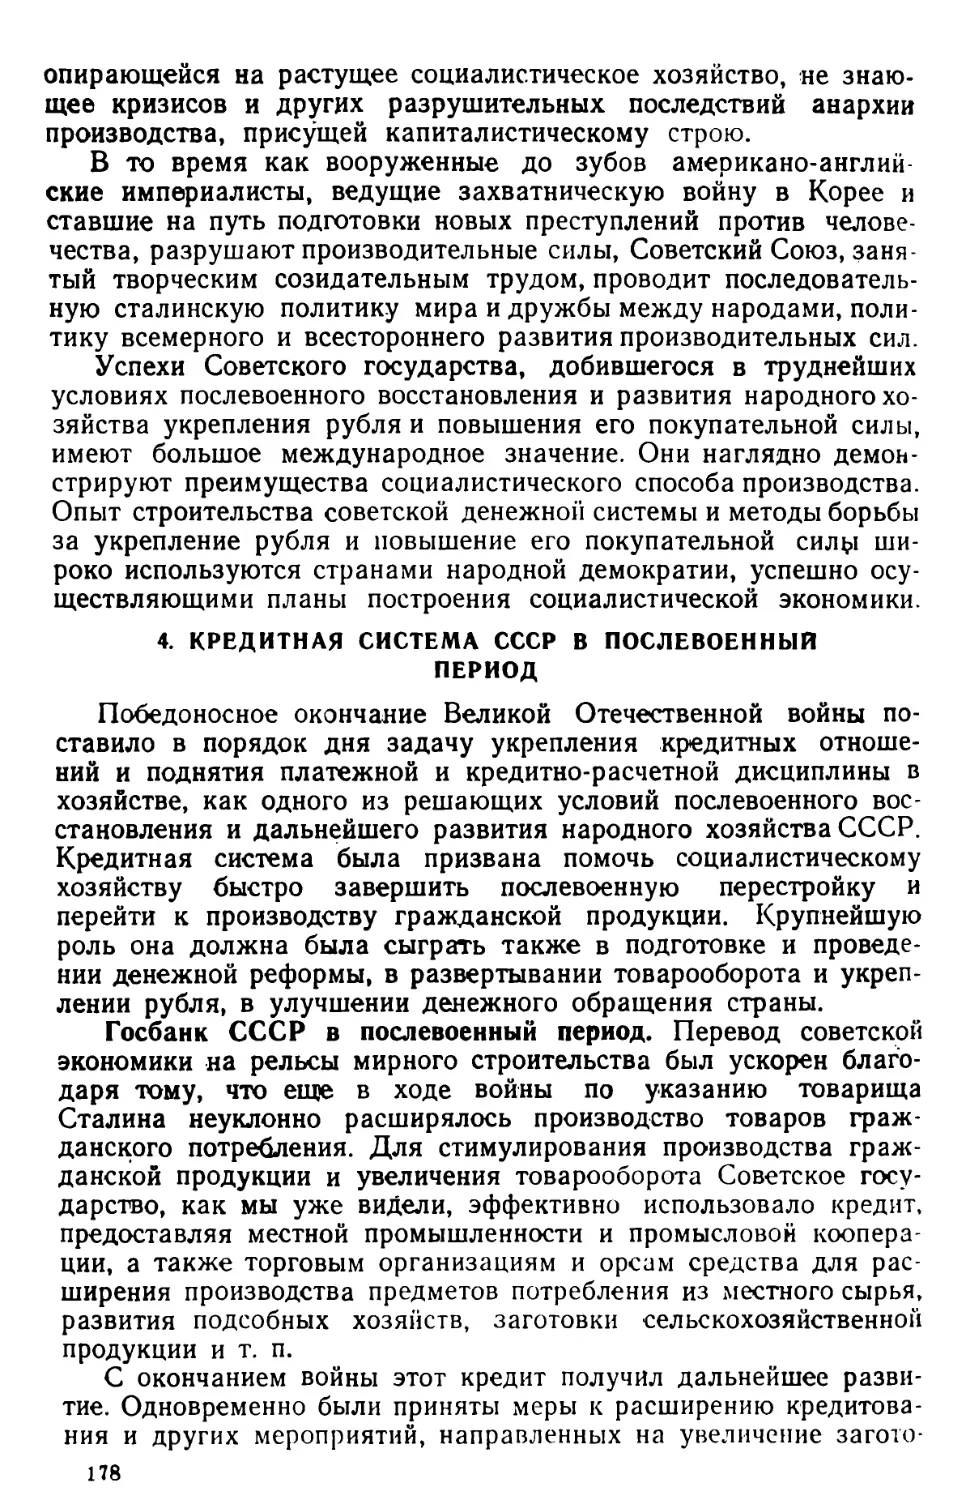 4. Кредитная система СССР в послевоенный период